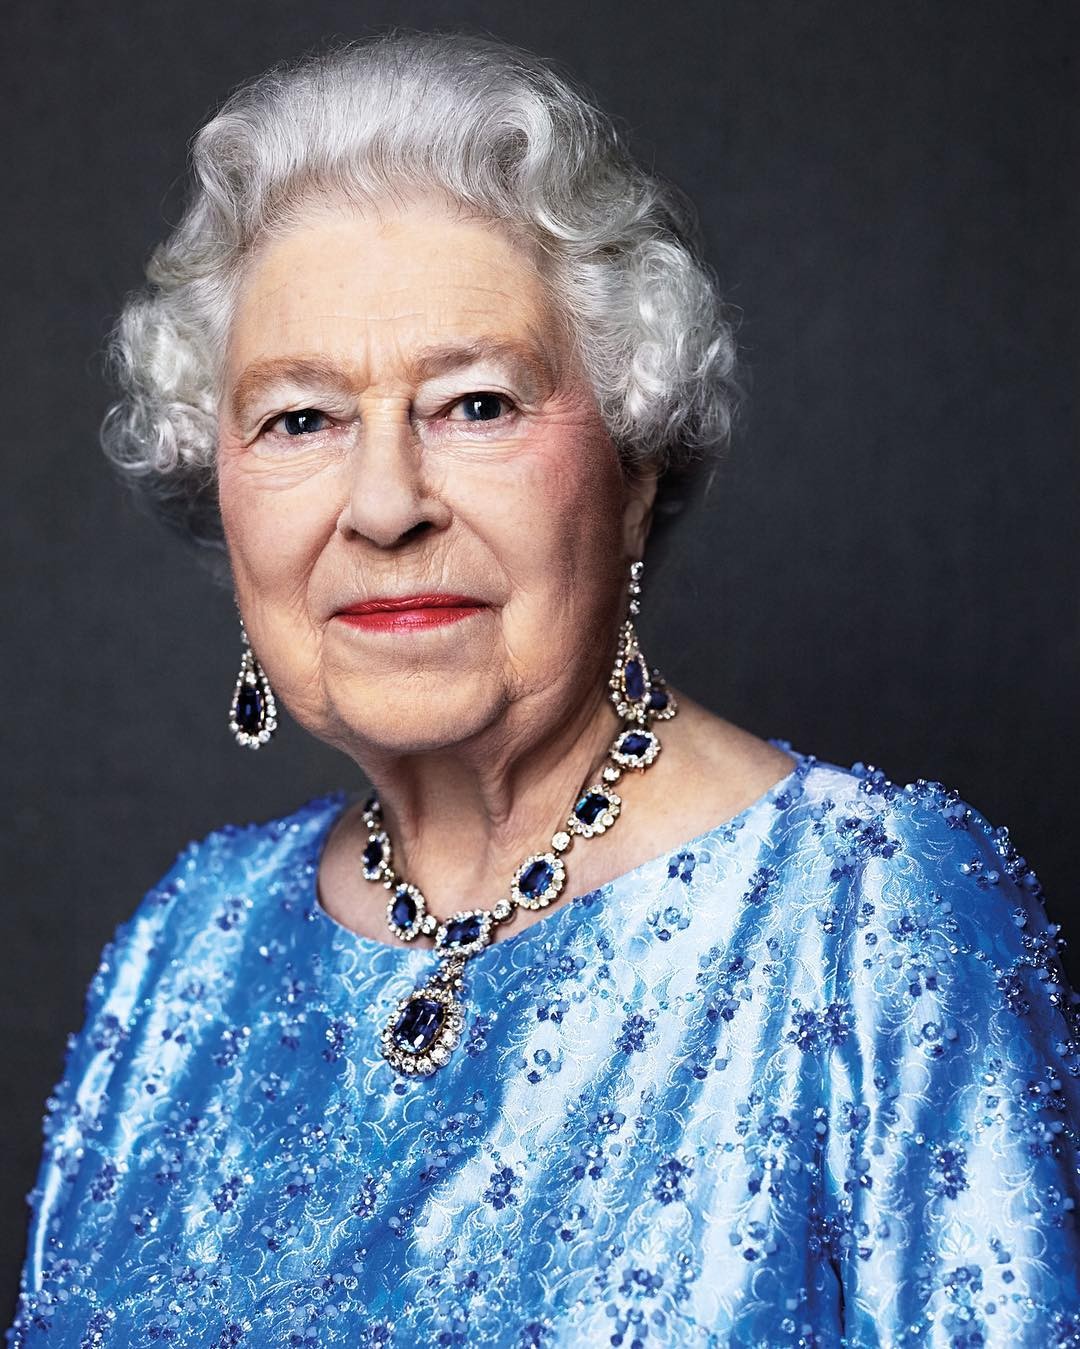 Retrato da monarca feito em 2014, foi utilizado em postagem das redes sociais da monarquia, em 2017, para celebrar o Jubileu de Safira, os 65 anos de reinado — Foto: David Bailey/Reprodução Instagram @theroyalfamily